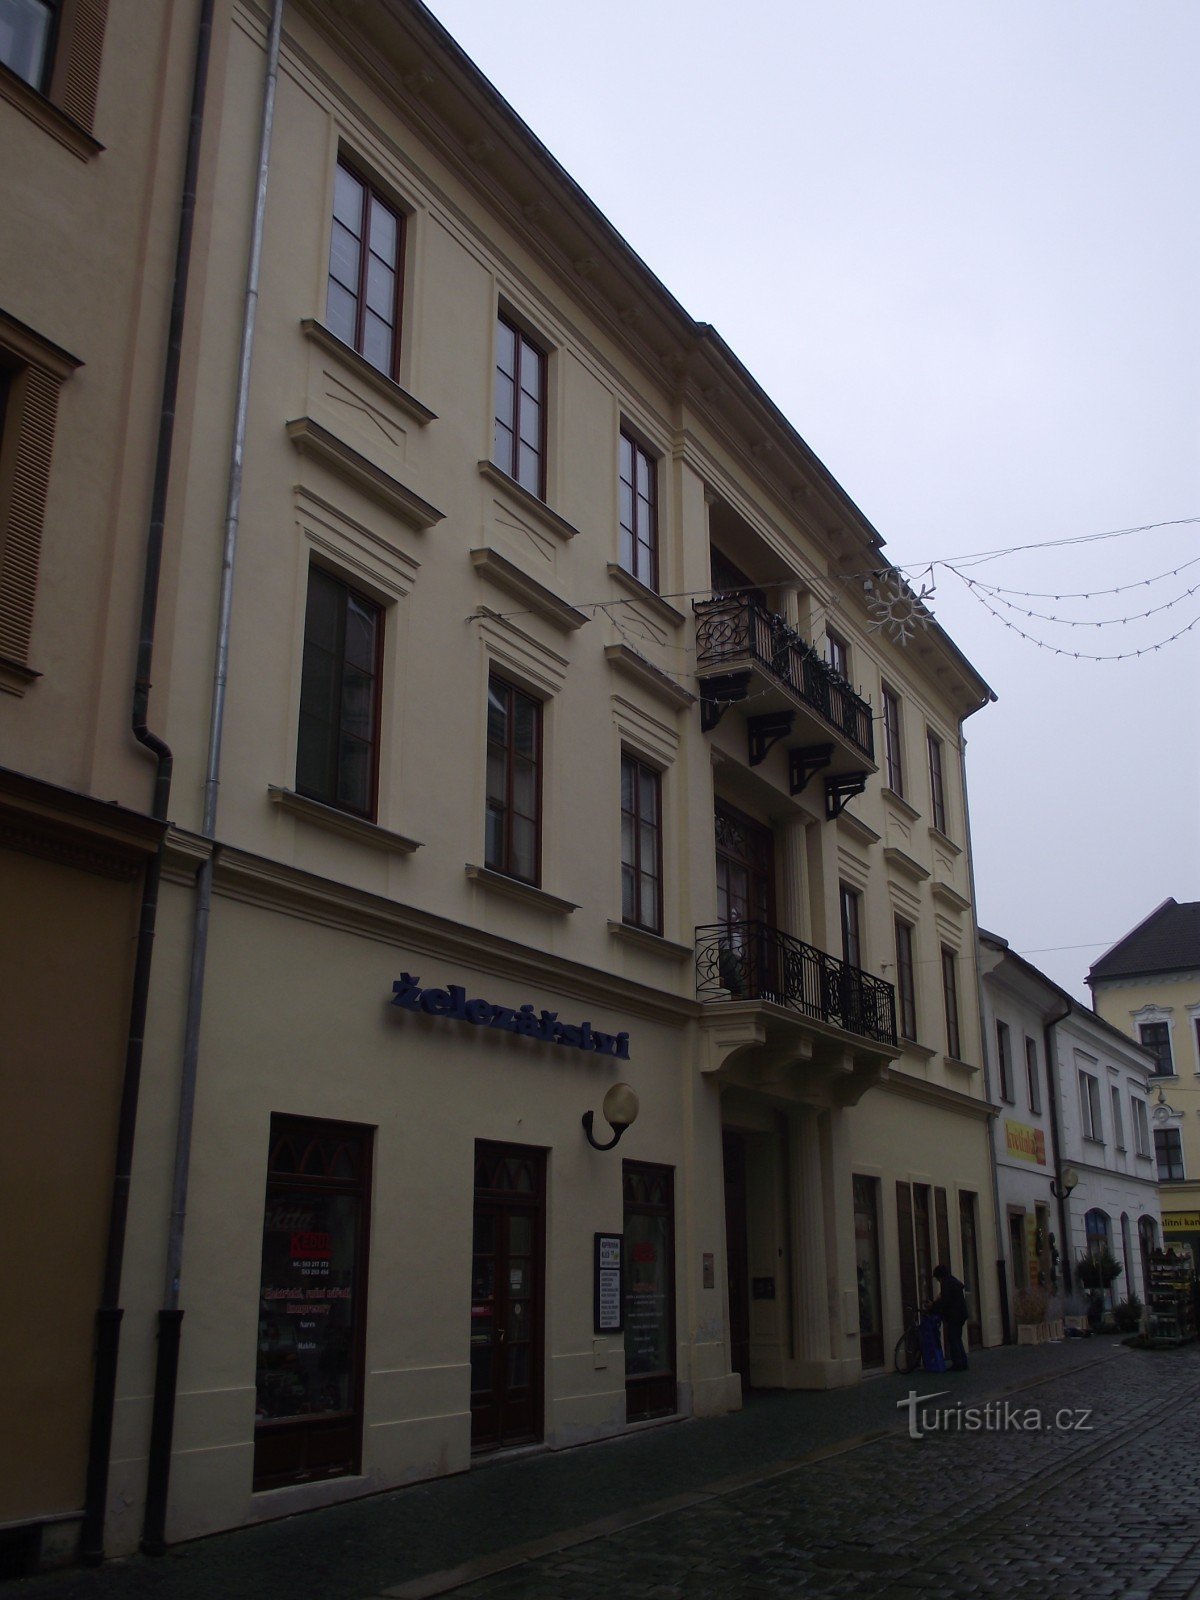 frontage to Starobranská street